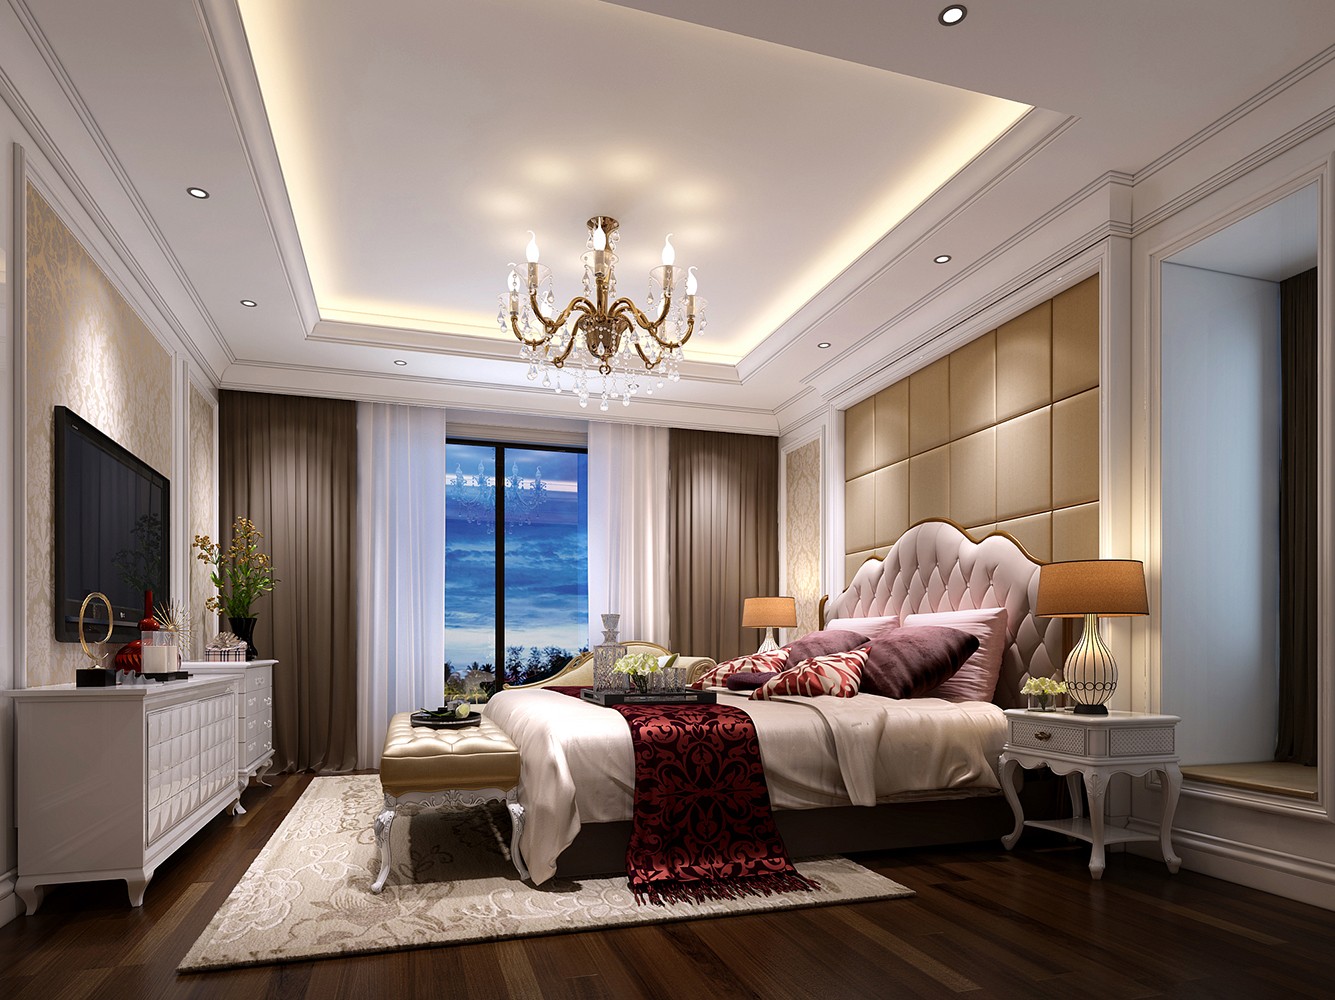 卧室窗帘装修效果图简约美式风格公寓其他卧室设计图片赏析